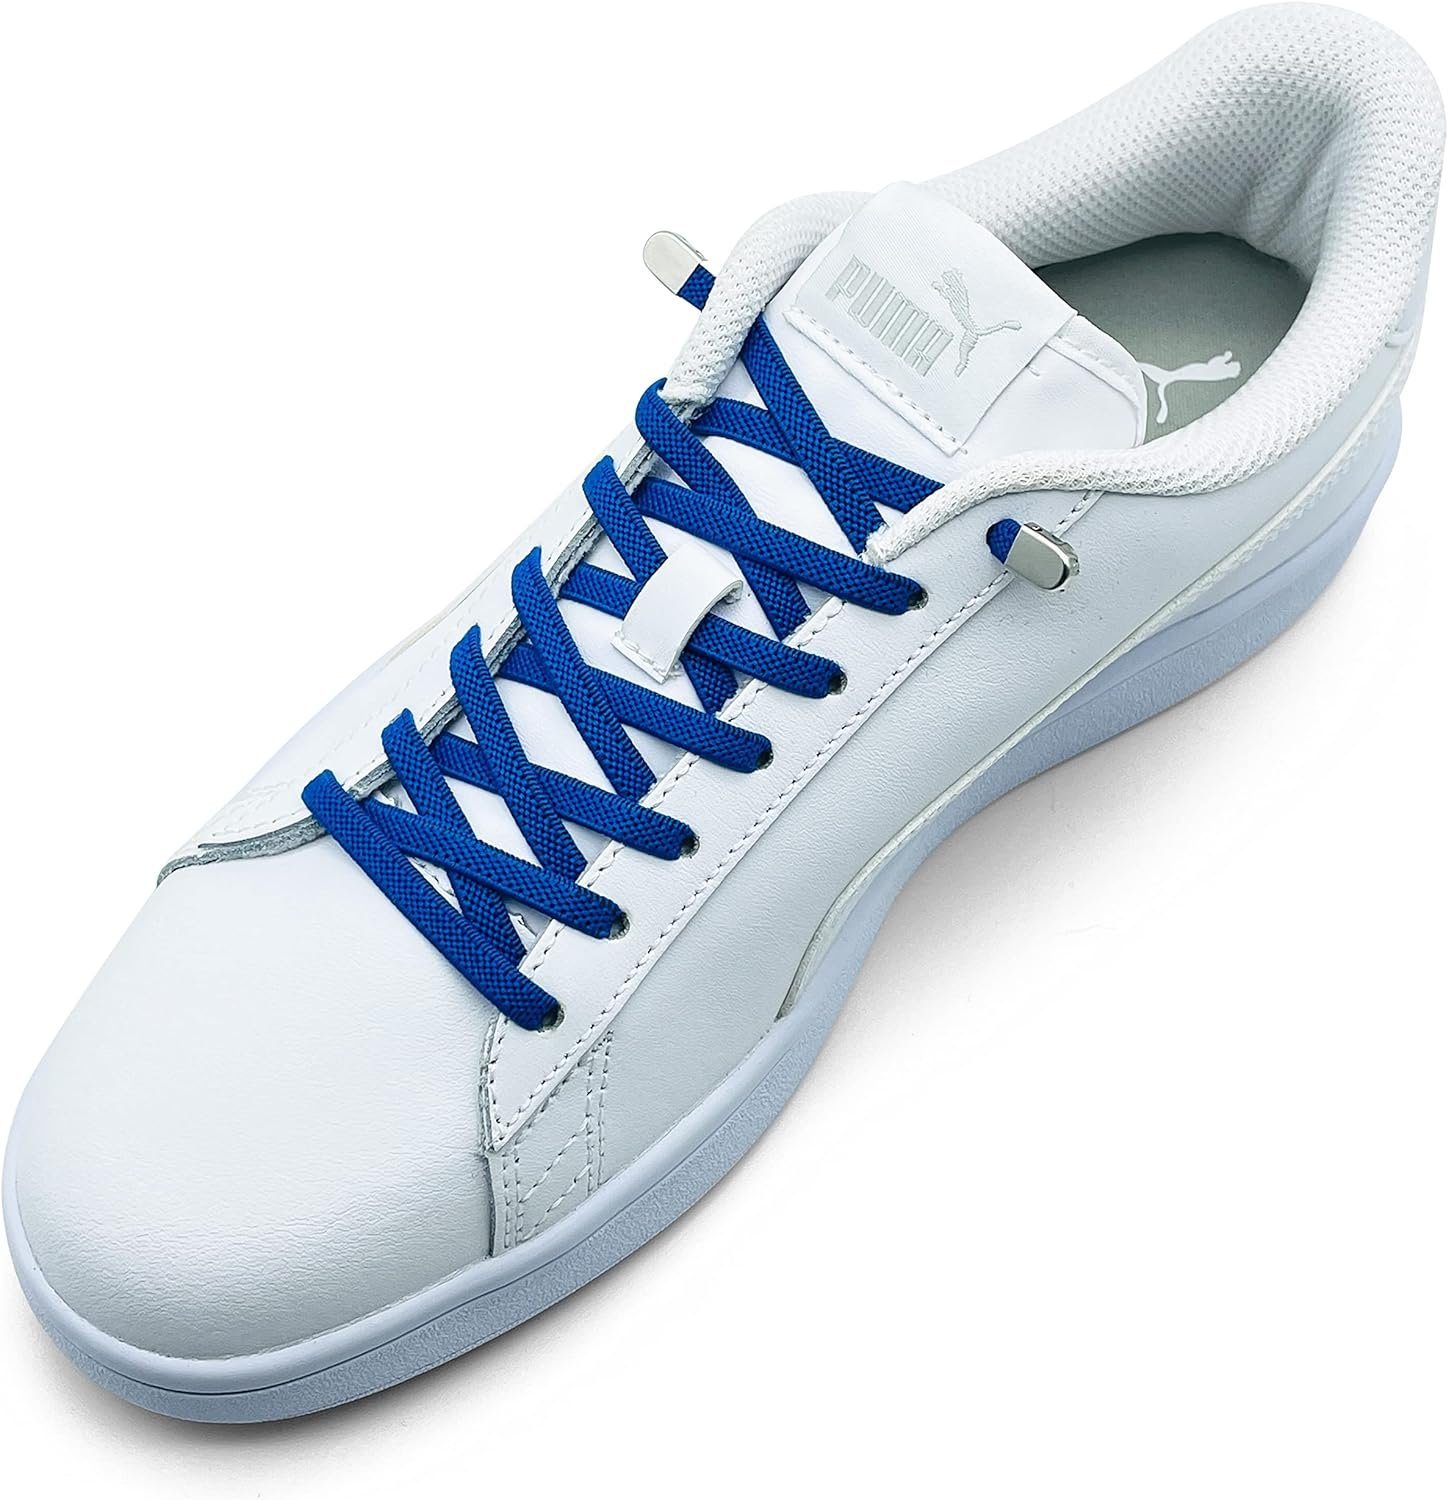 ELANOX Schnürsenkel 4 Stück für 2 Paar Schuhe elastische Schnürsenkel mit Clips, inkl. Enden (Clips) - 8 St. in silber blau